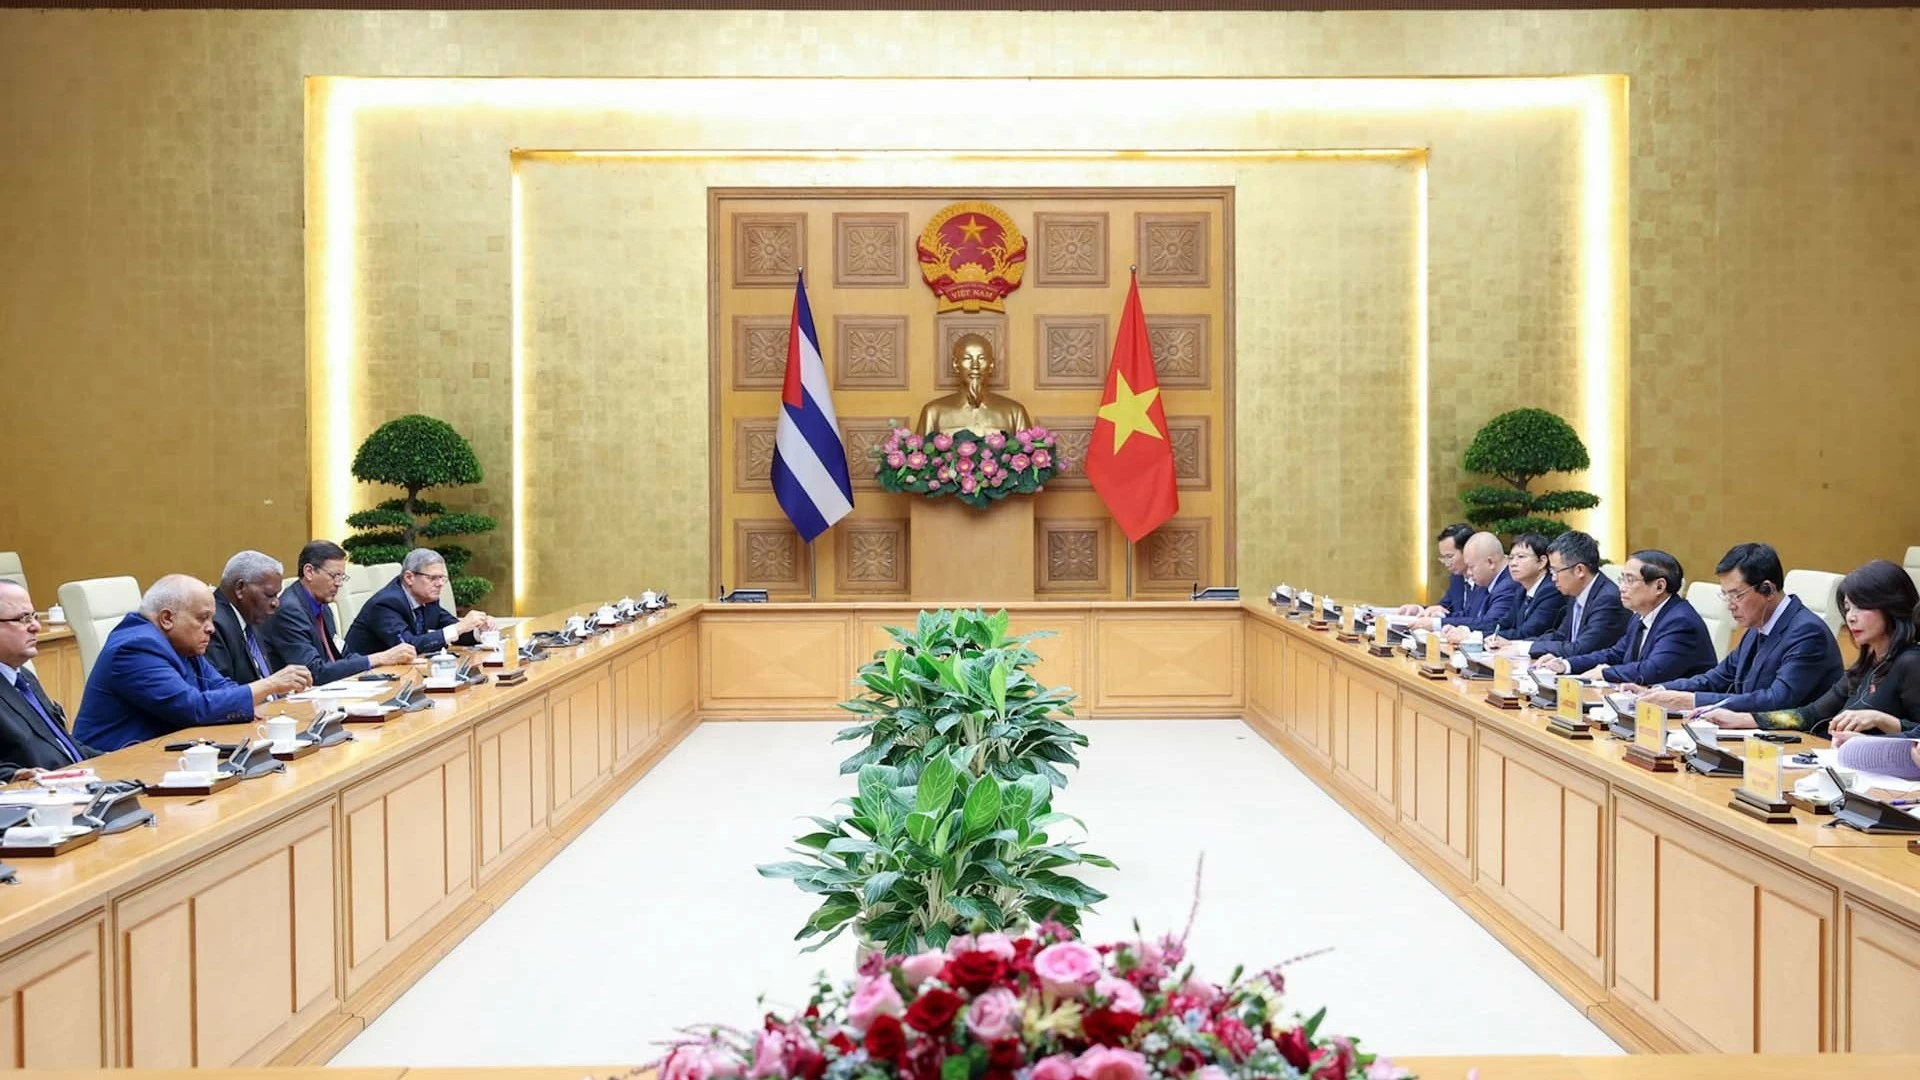 Thủ tướng Phạm Minh Chính tiếp Chủ tịch Quốc hội Cuba sang dự Lễ Quốc tang Tổng Bí thư Nguyễn Phú Trọng